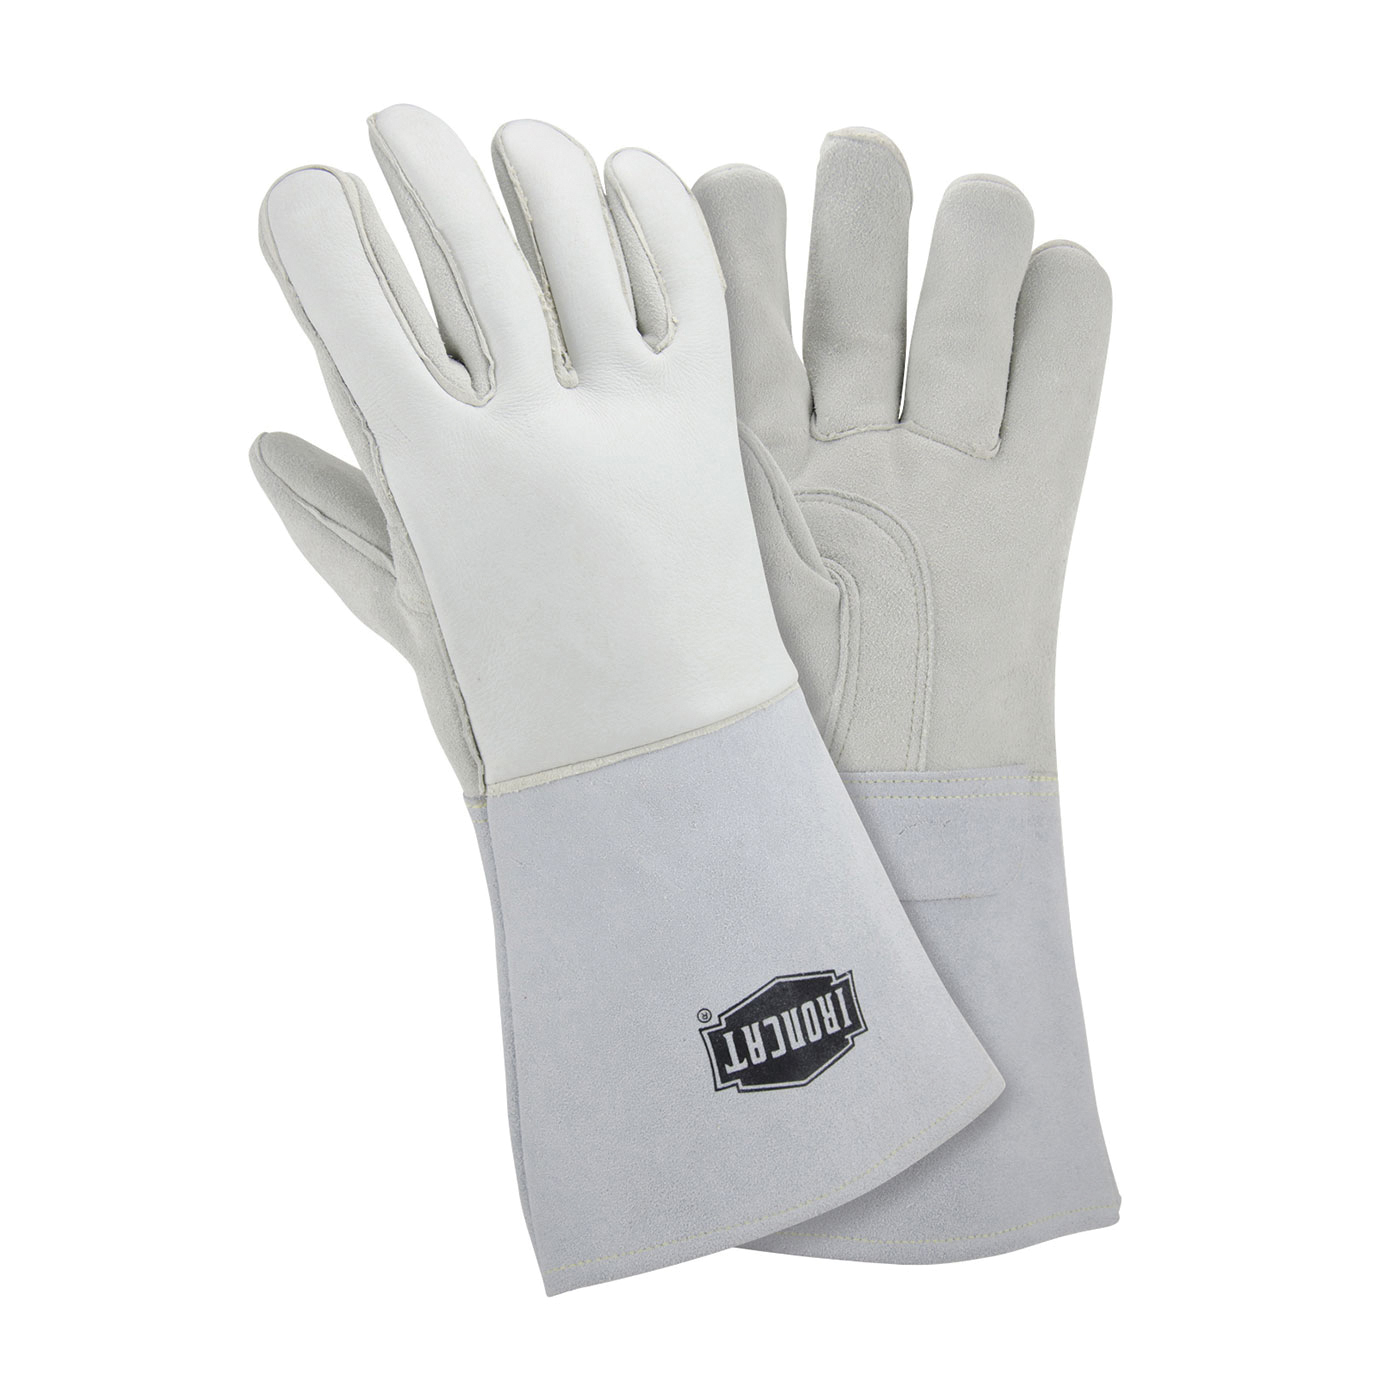 PIP® 9061/XL Premium Grade Welding Gloves, XL, Kevlar® Thread/Leather, Off-White, Cotton/Foam Lining, Gauntlet Cuff, 14-1/2 in L